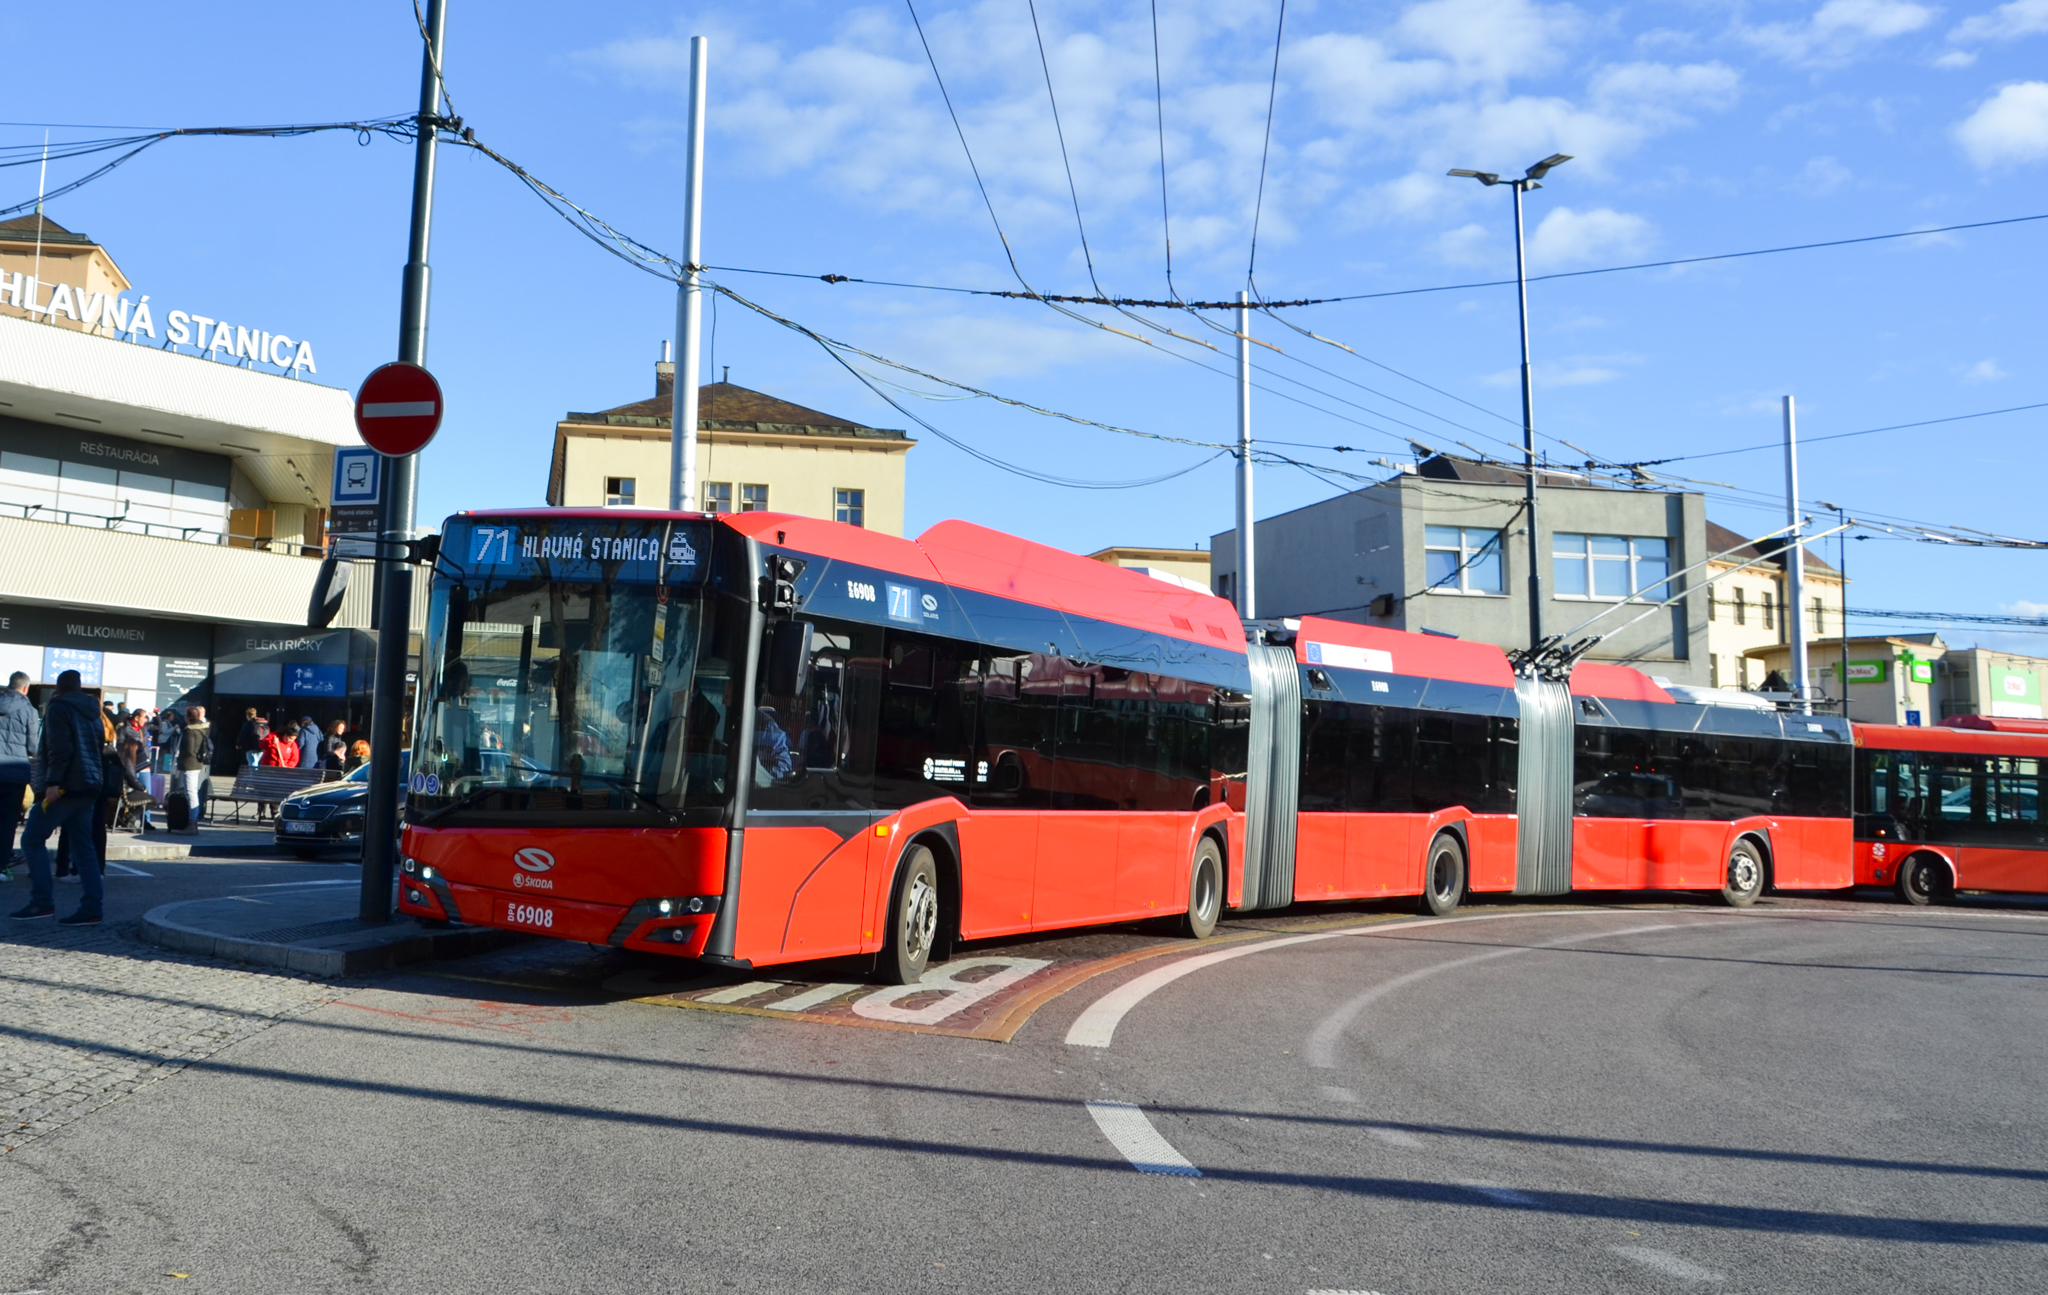 Najdlhší trolejbus v Bratislave: Pre vodiča výzva, pre cestujúcich záruka pohodlia